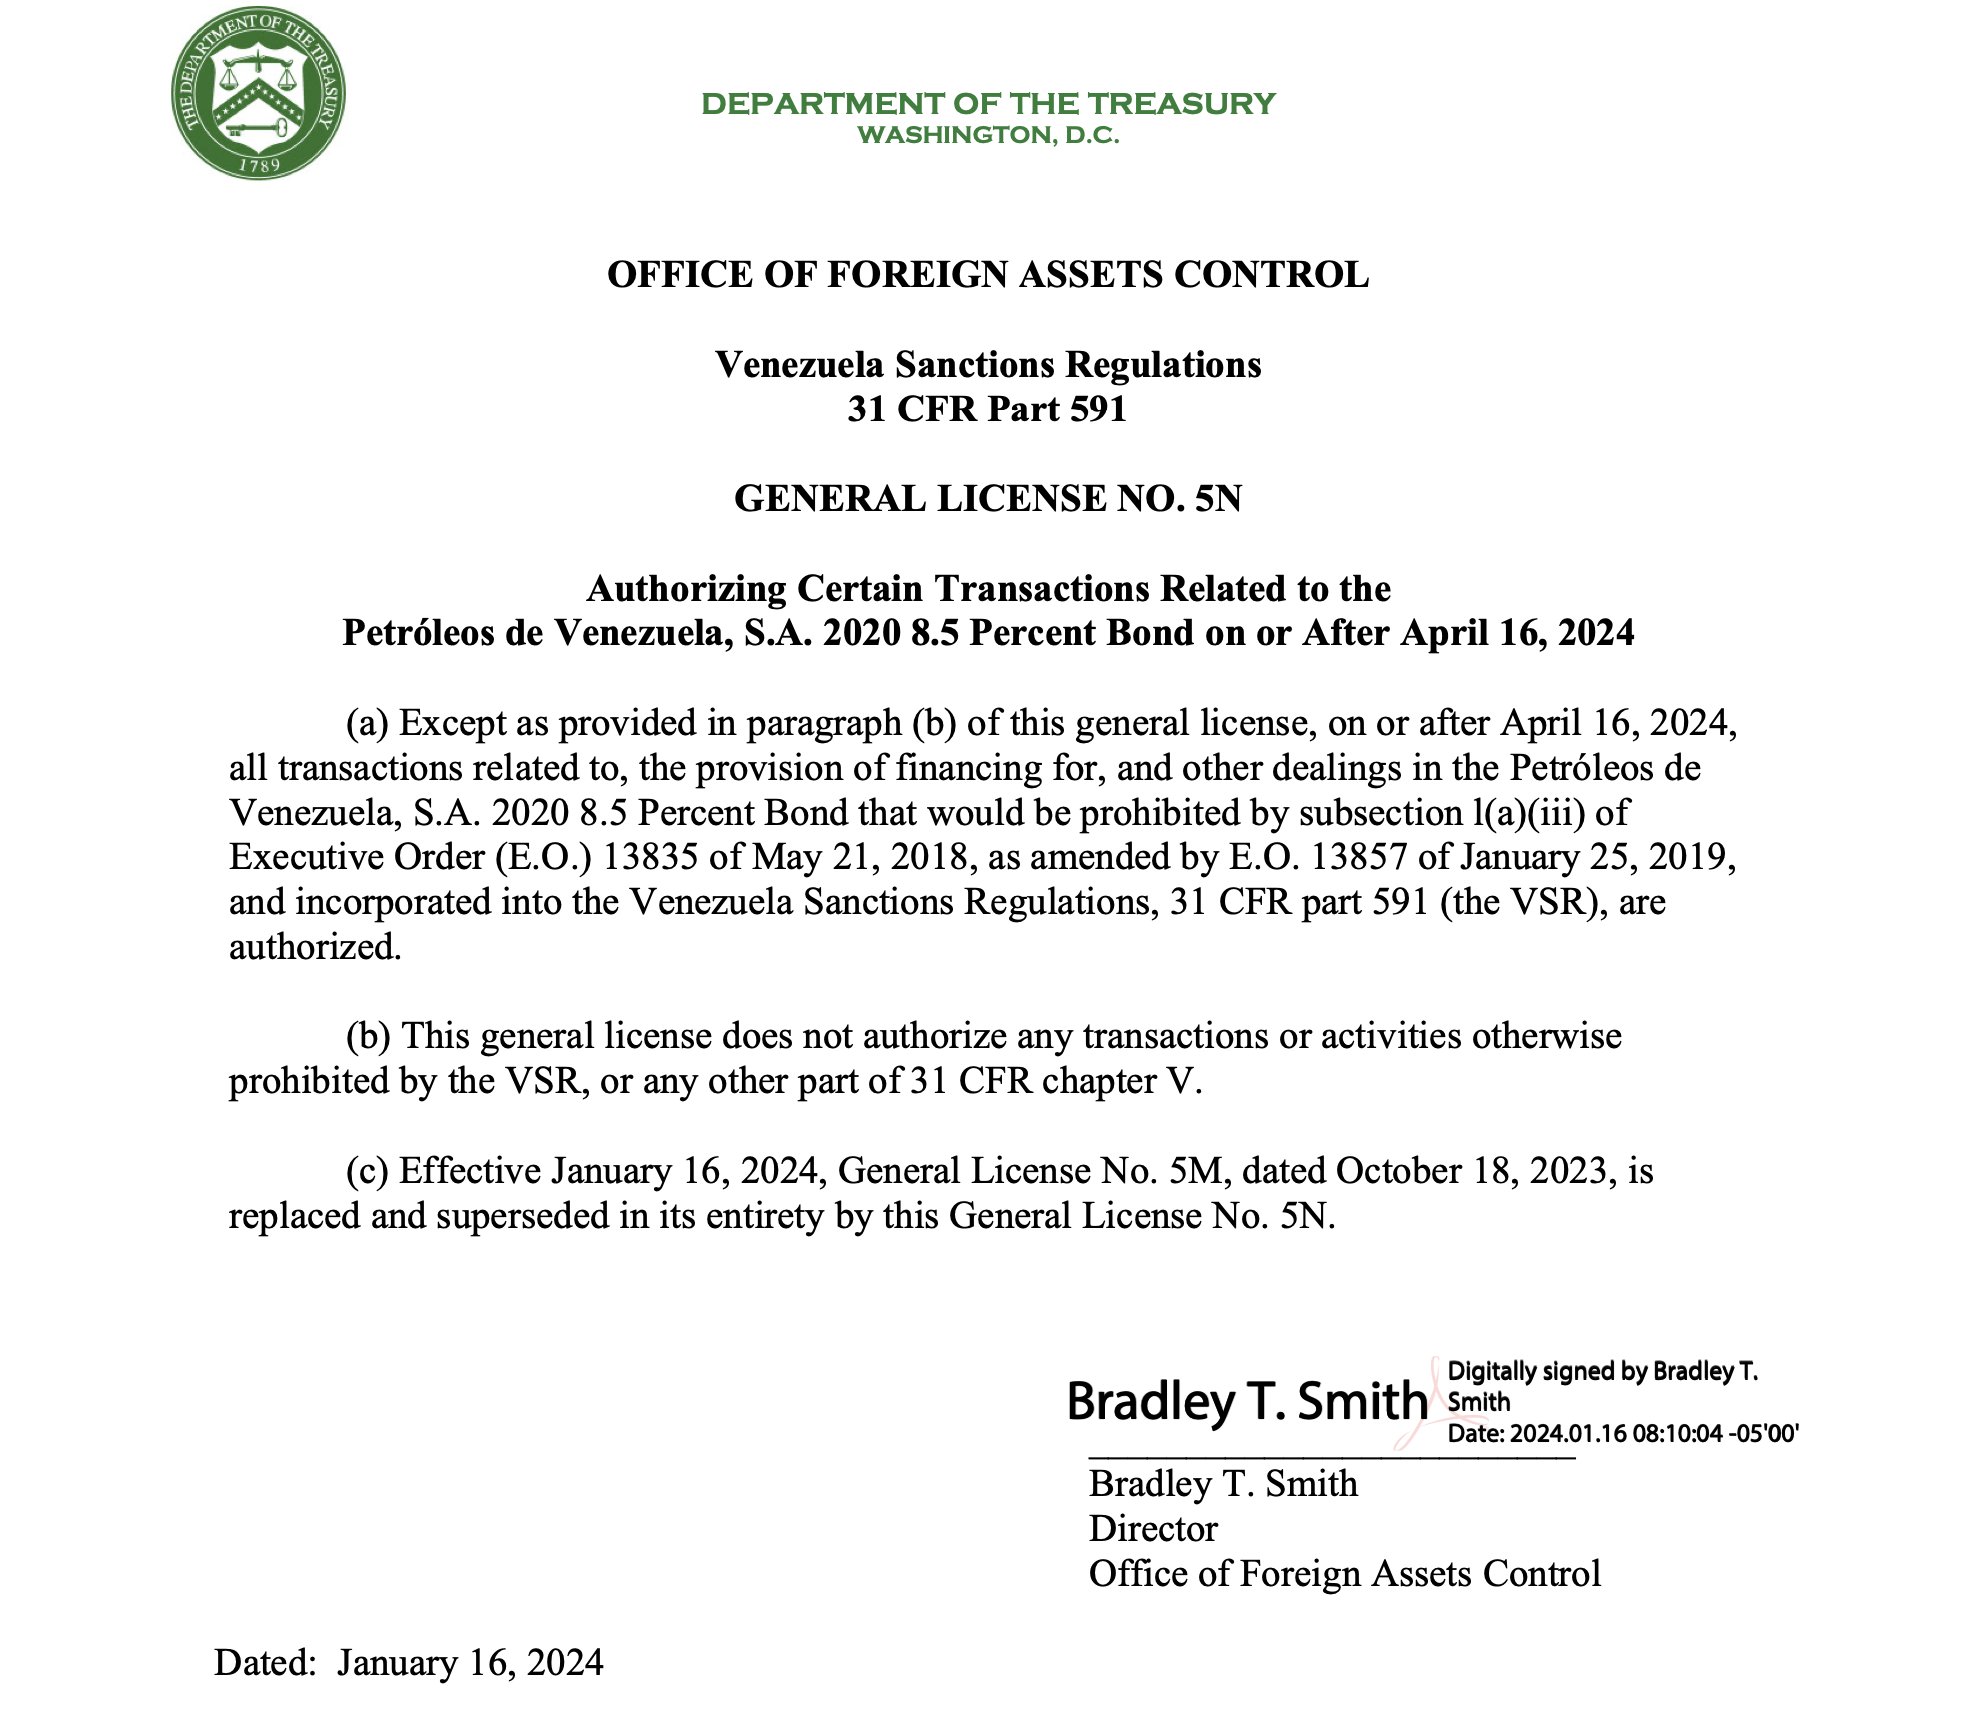 #Atentos: OFAC prorroga hasta abril la licencia que impide embargo de Citgo